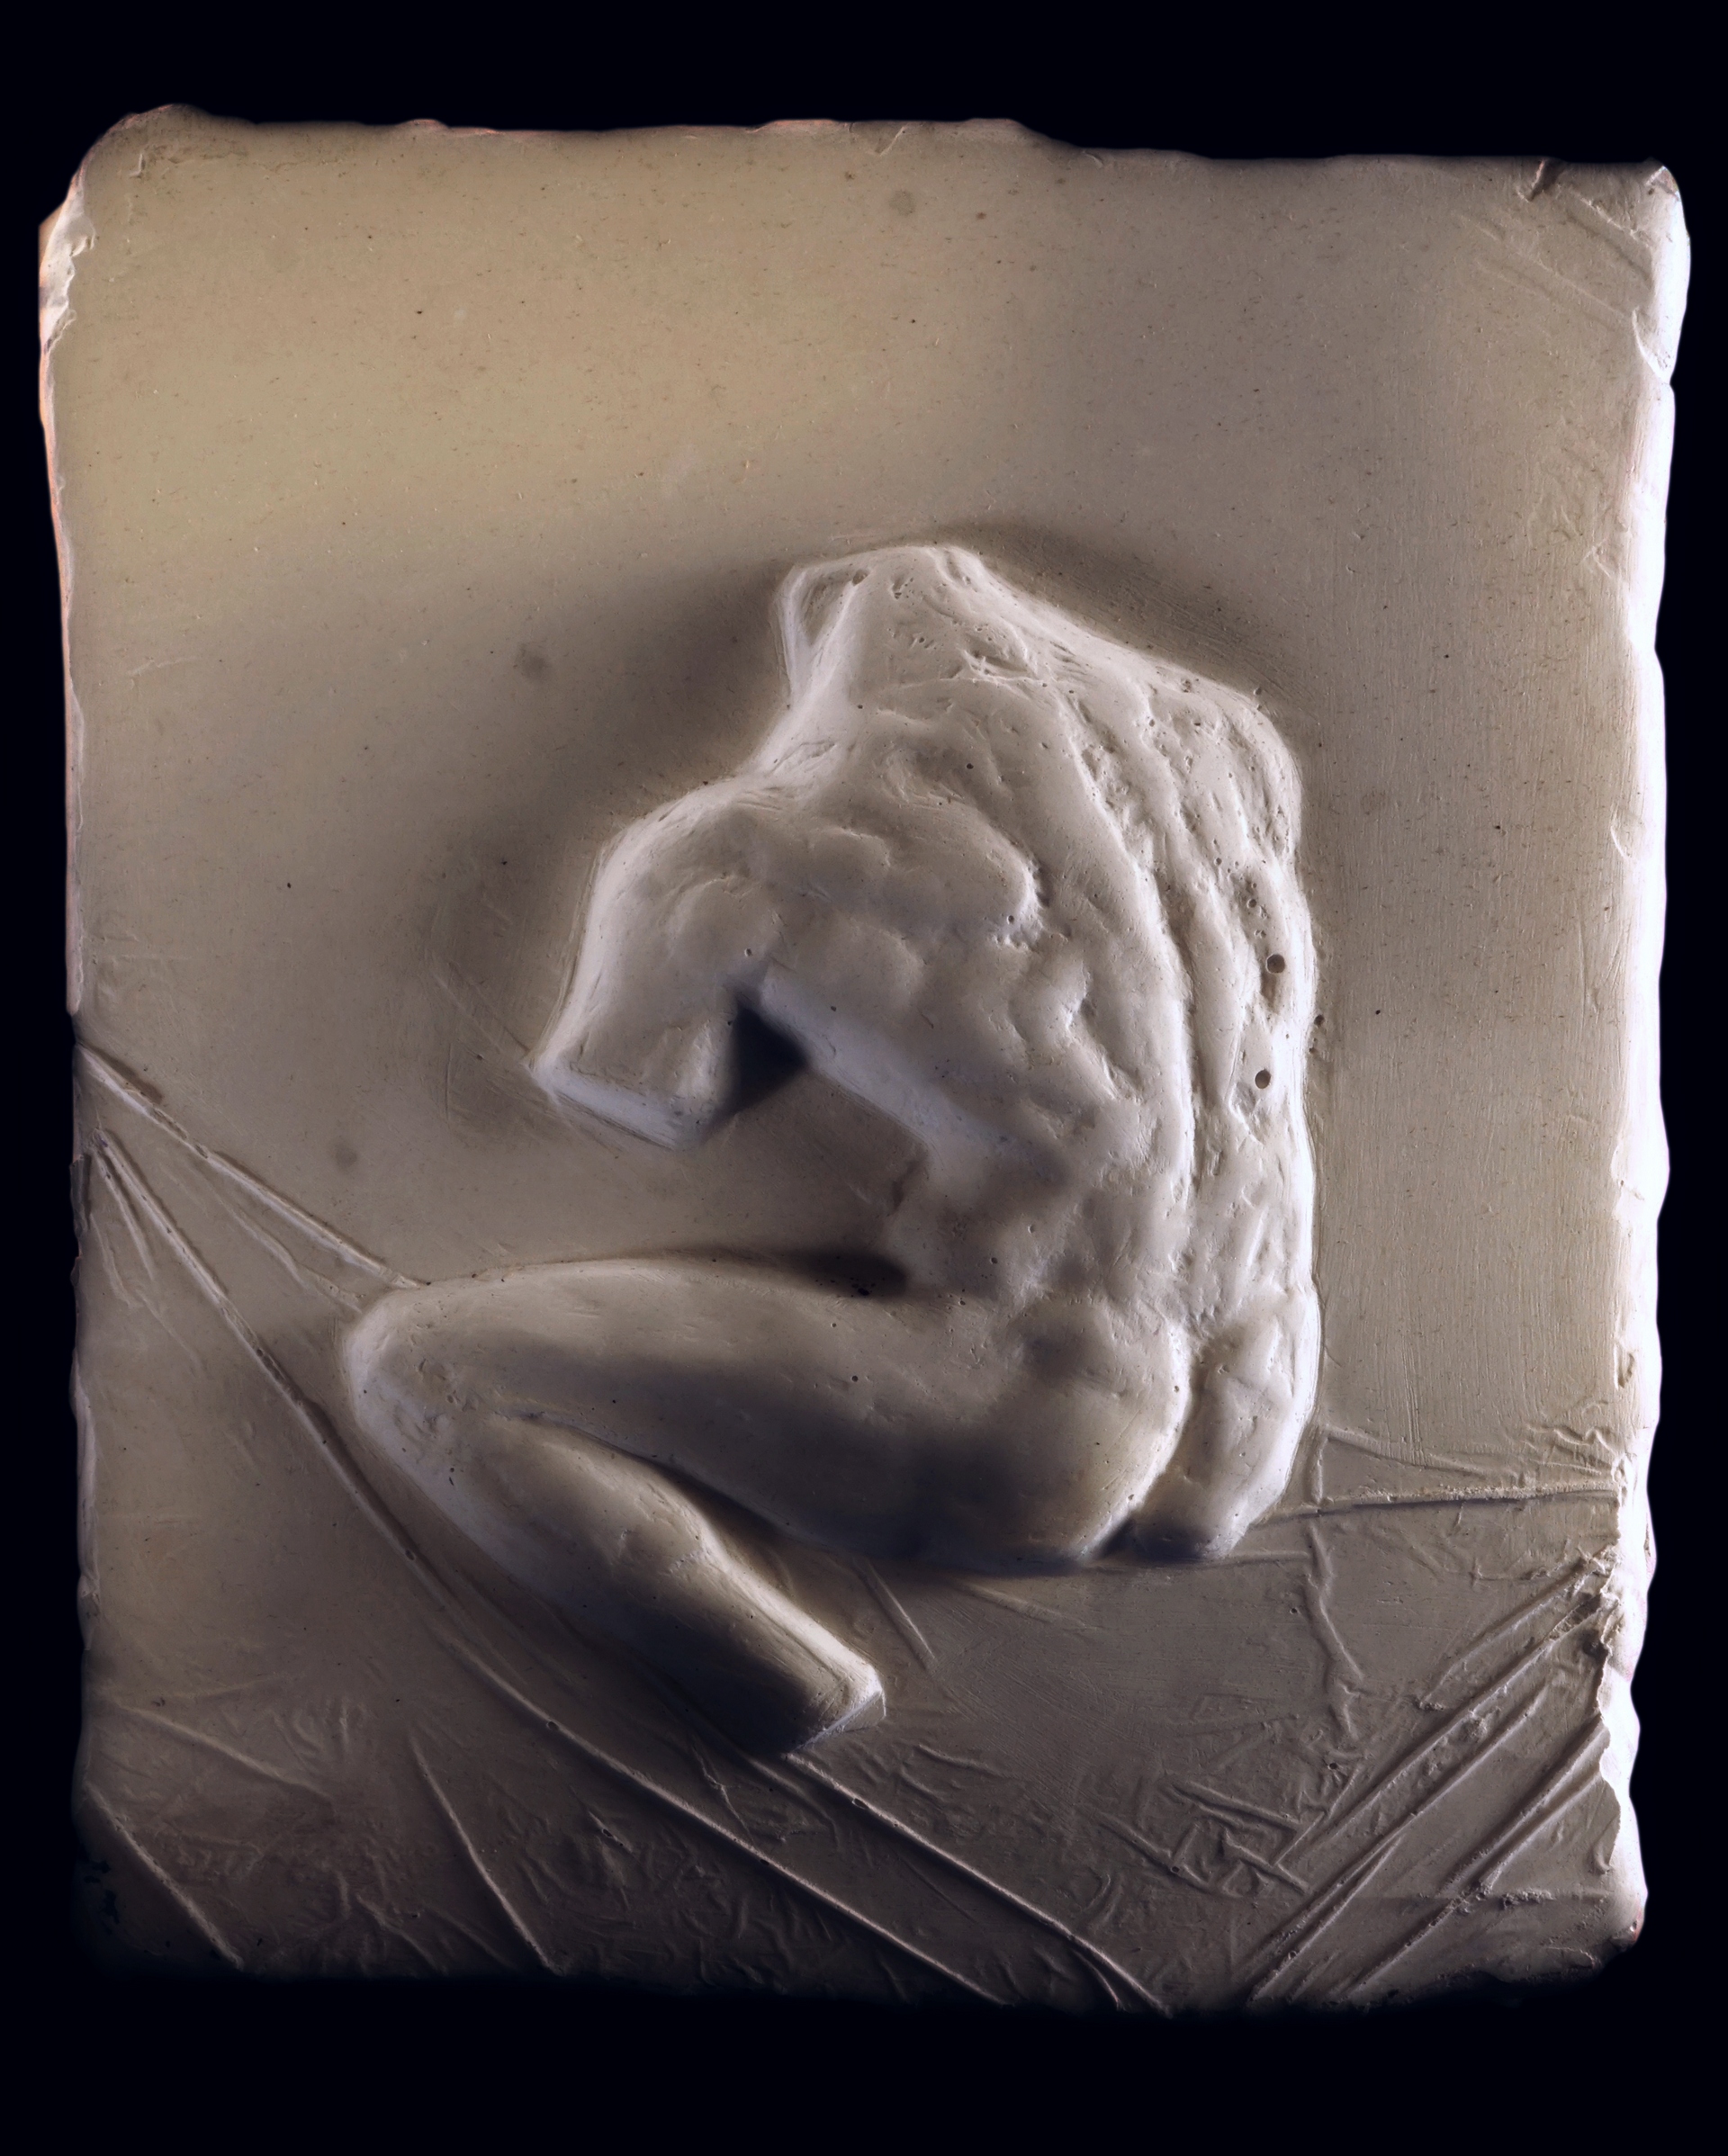 J.Osika - zdjęcie przedstawia płaskorzeźbę ukazująca męski akt zwrócony do widza plecami, bez kończyn i głowy, wykonano w gipsie.